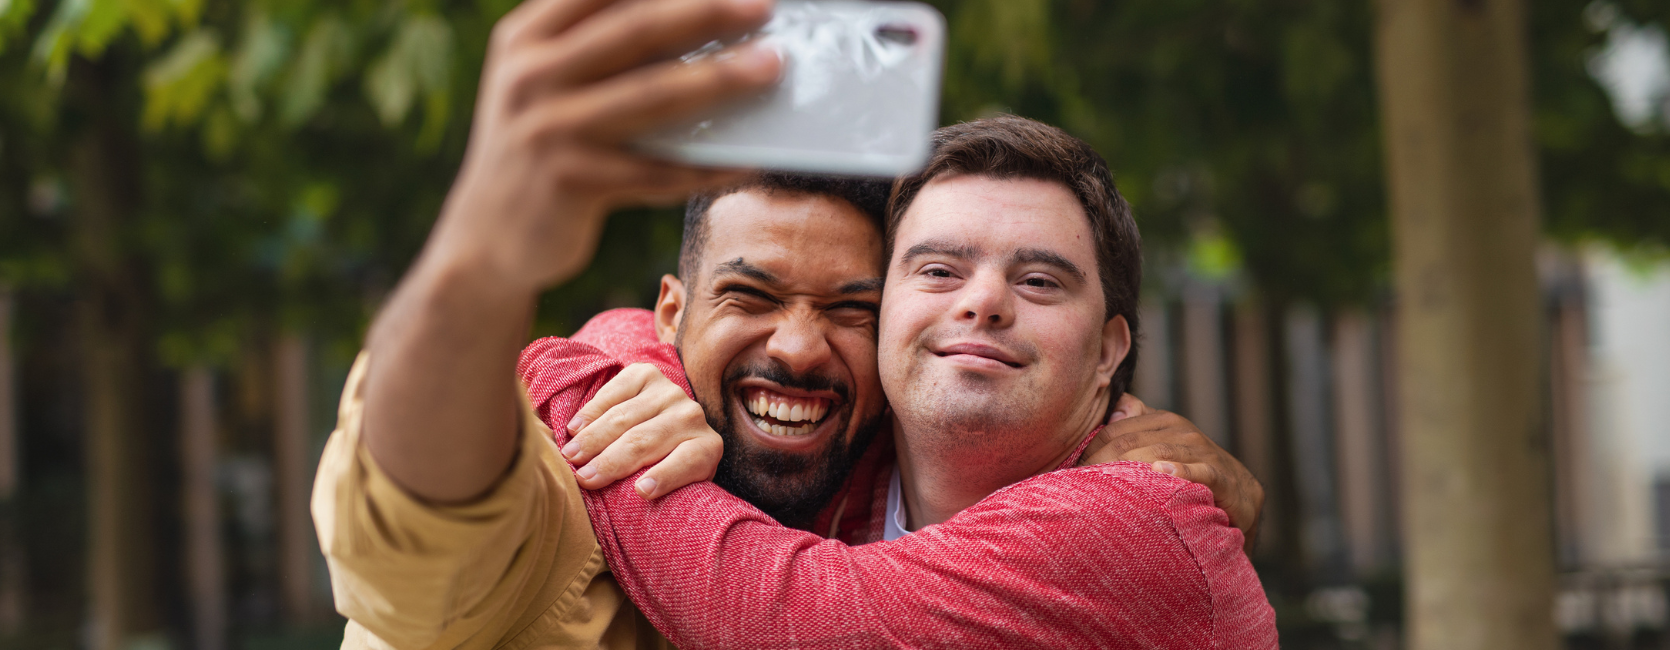 Ein Mann macht ein gemeinsames Selfie-Bild mit einem Mann mit Down-Syndrom.